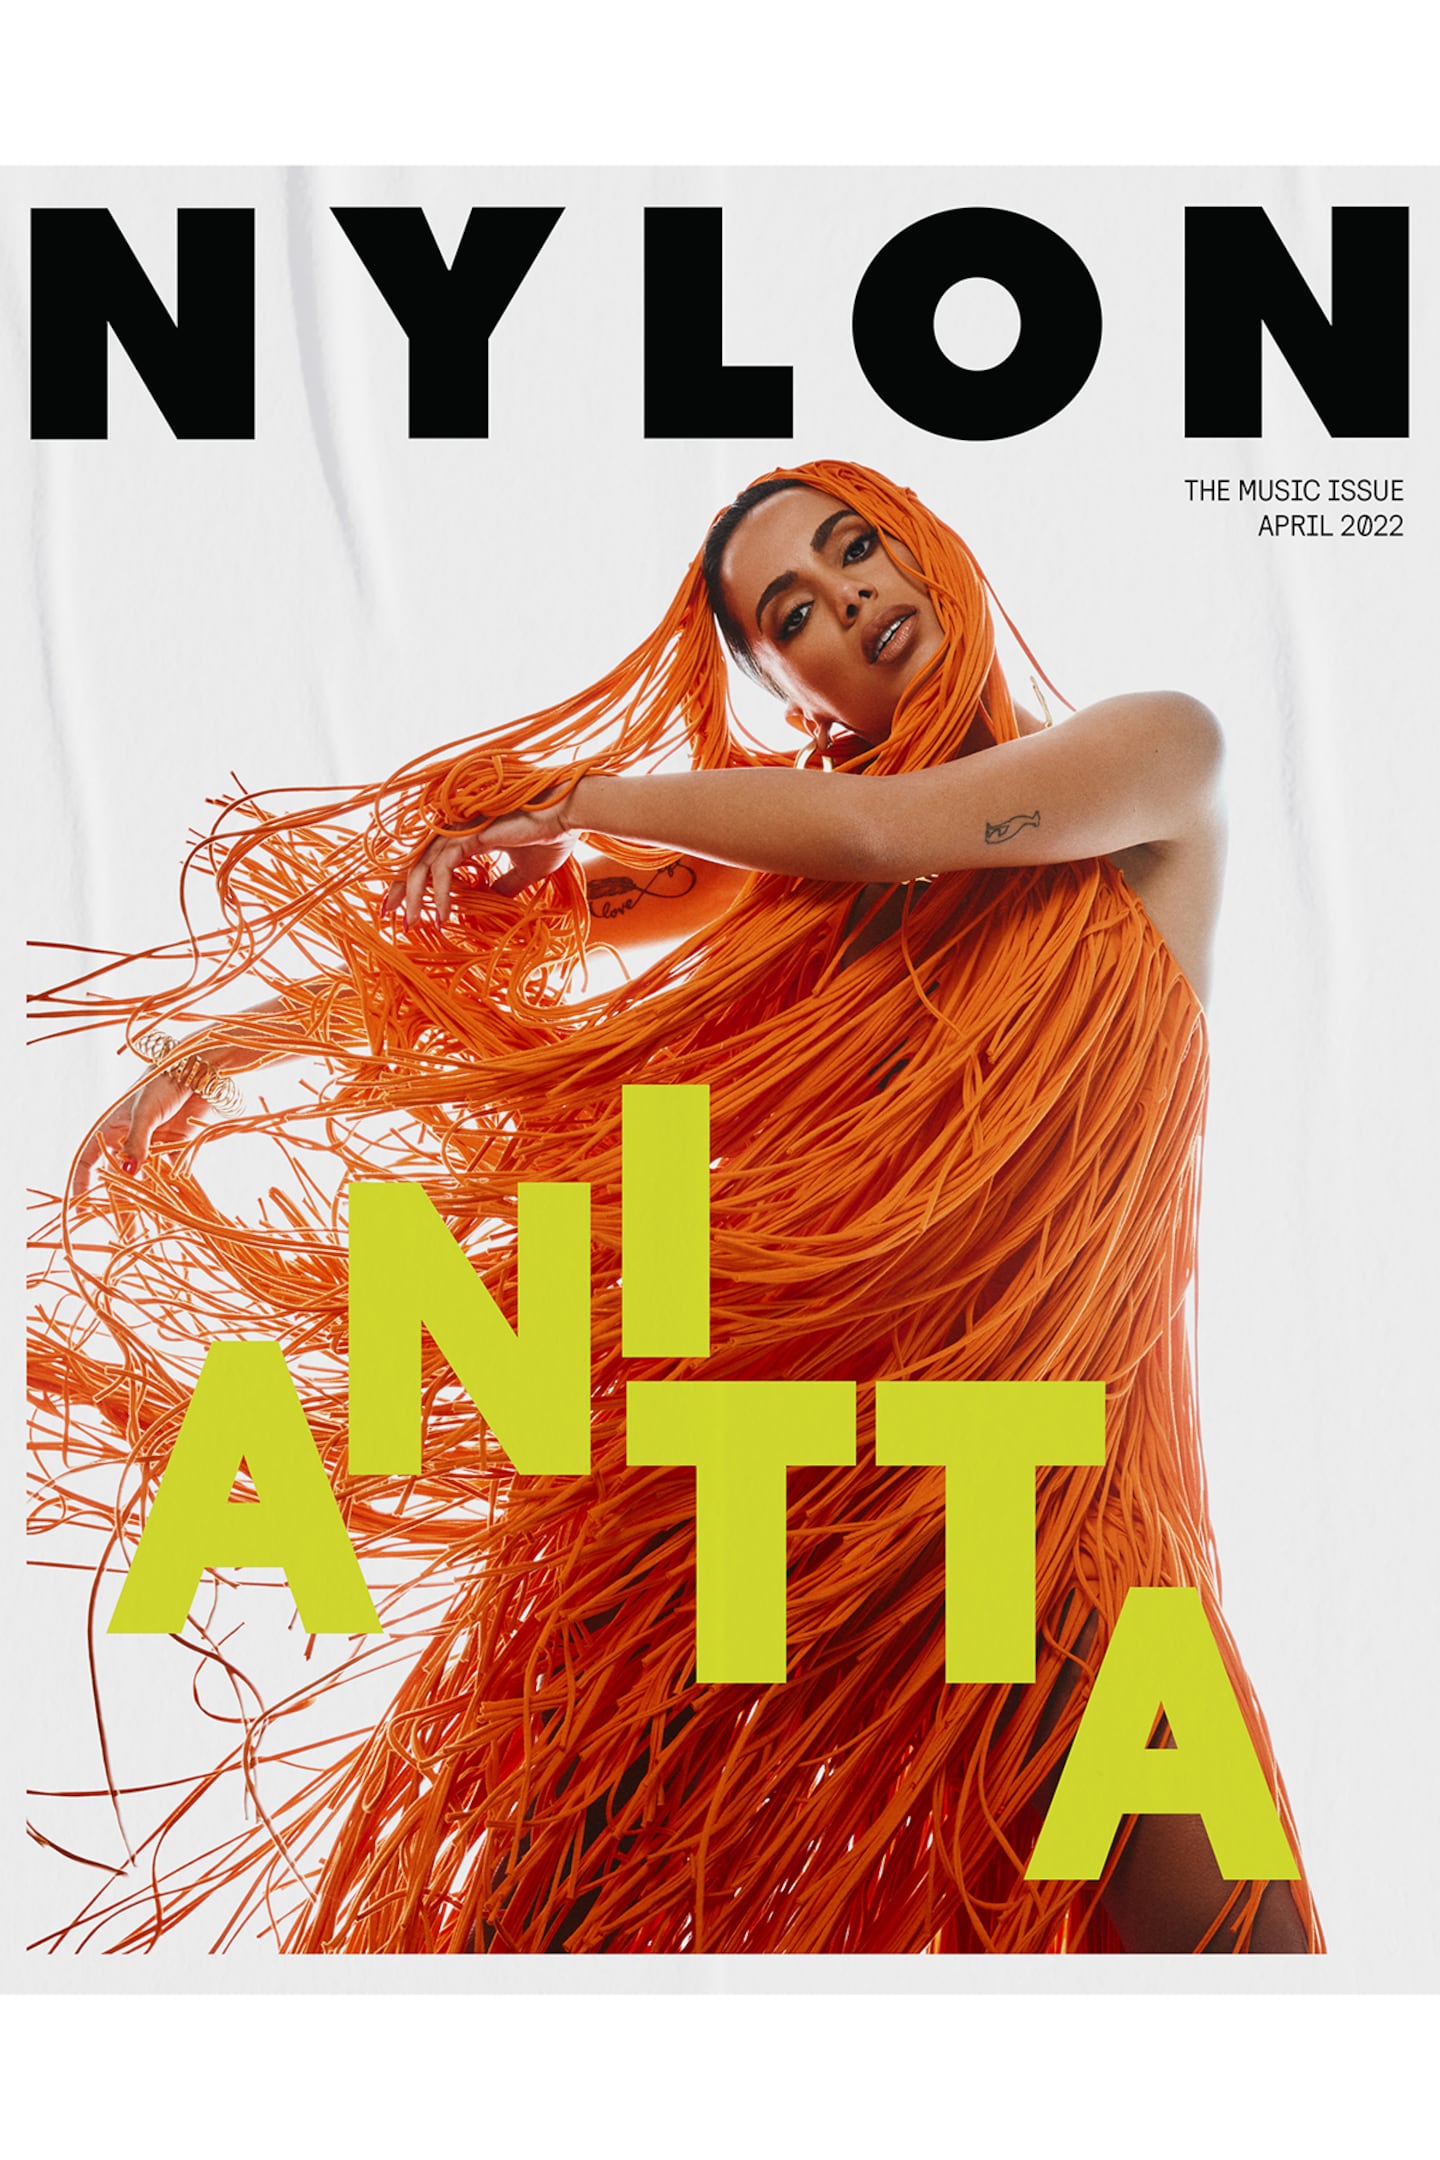 Nylon's April 2022 digital cover